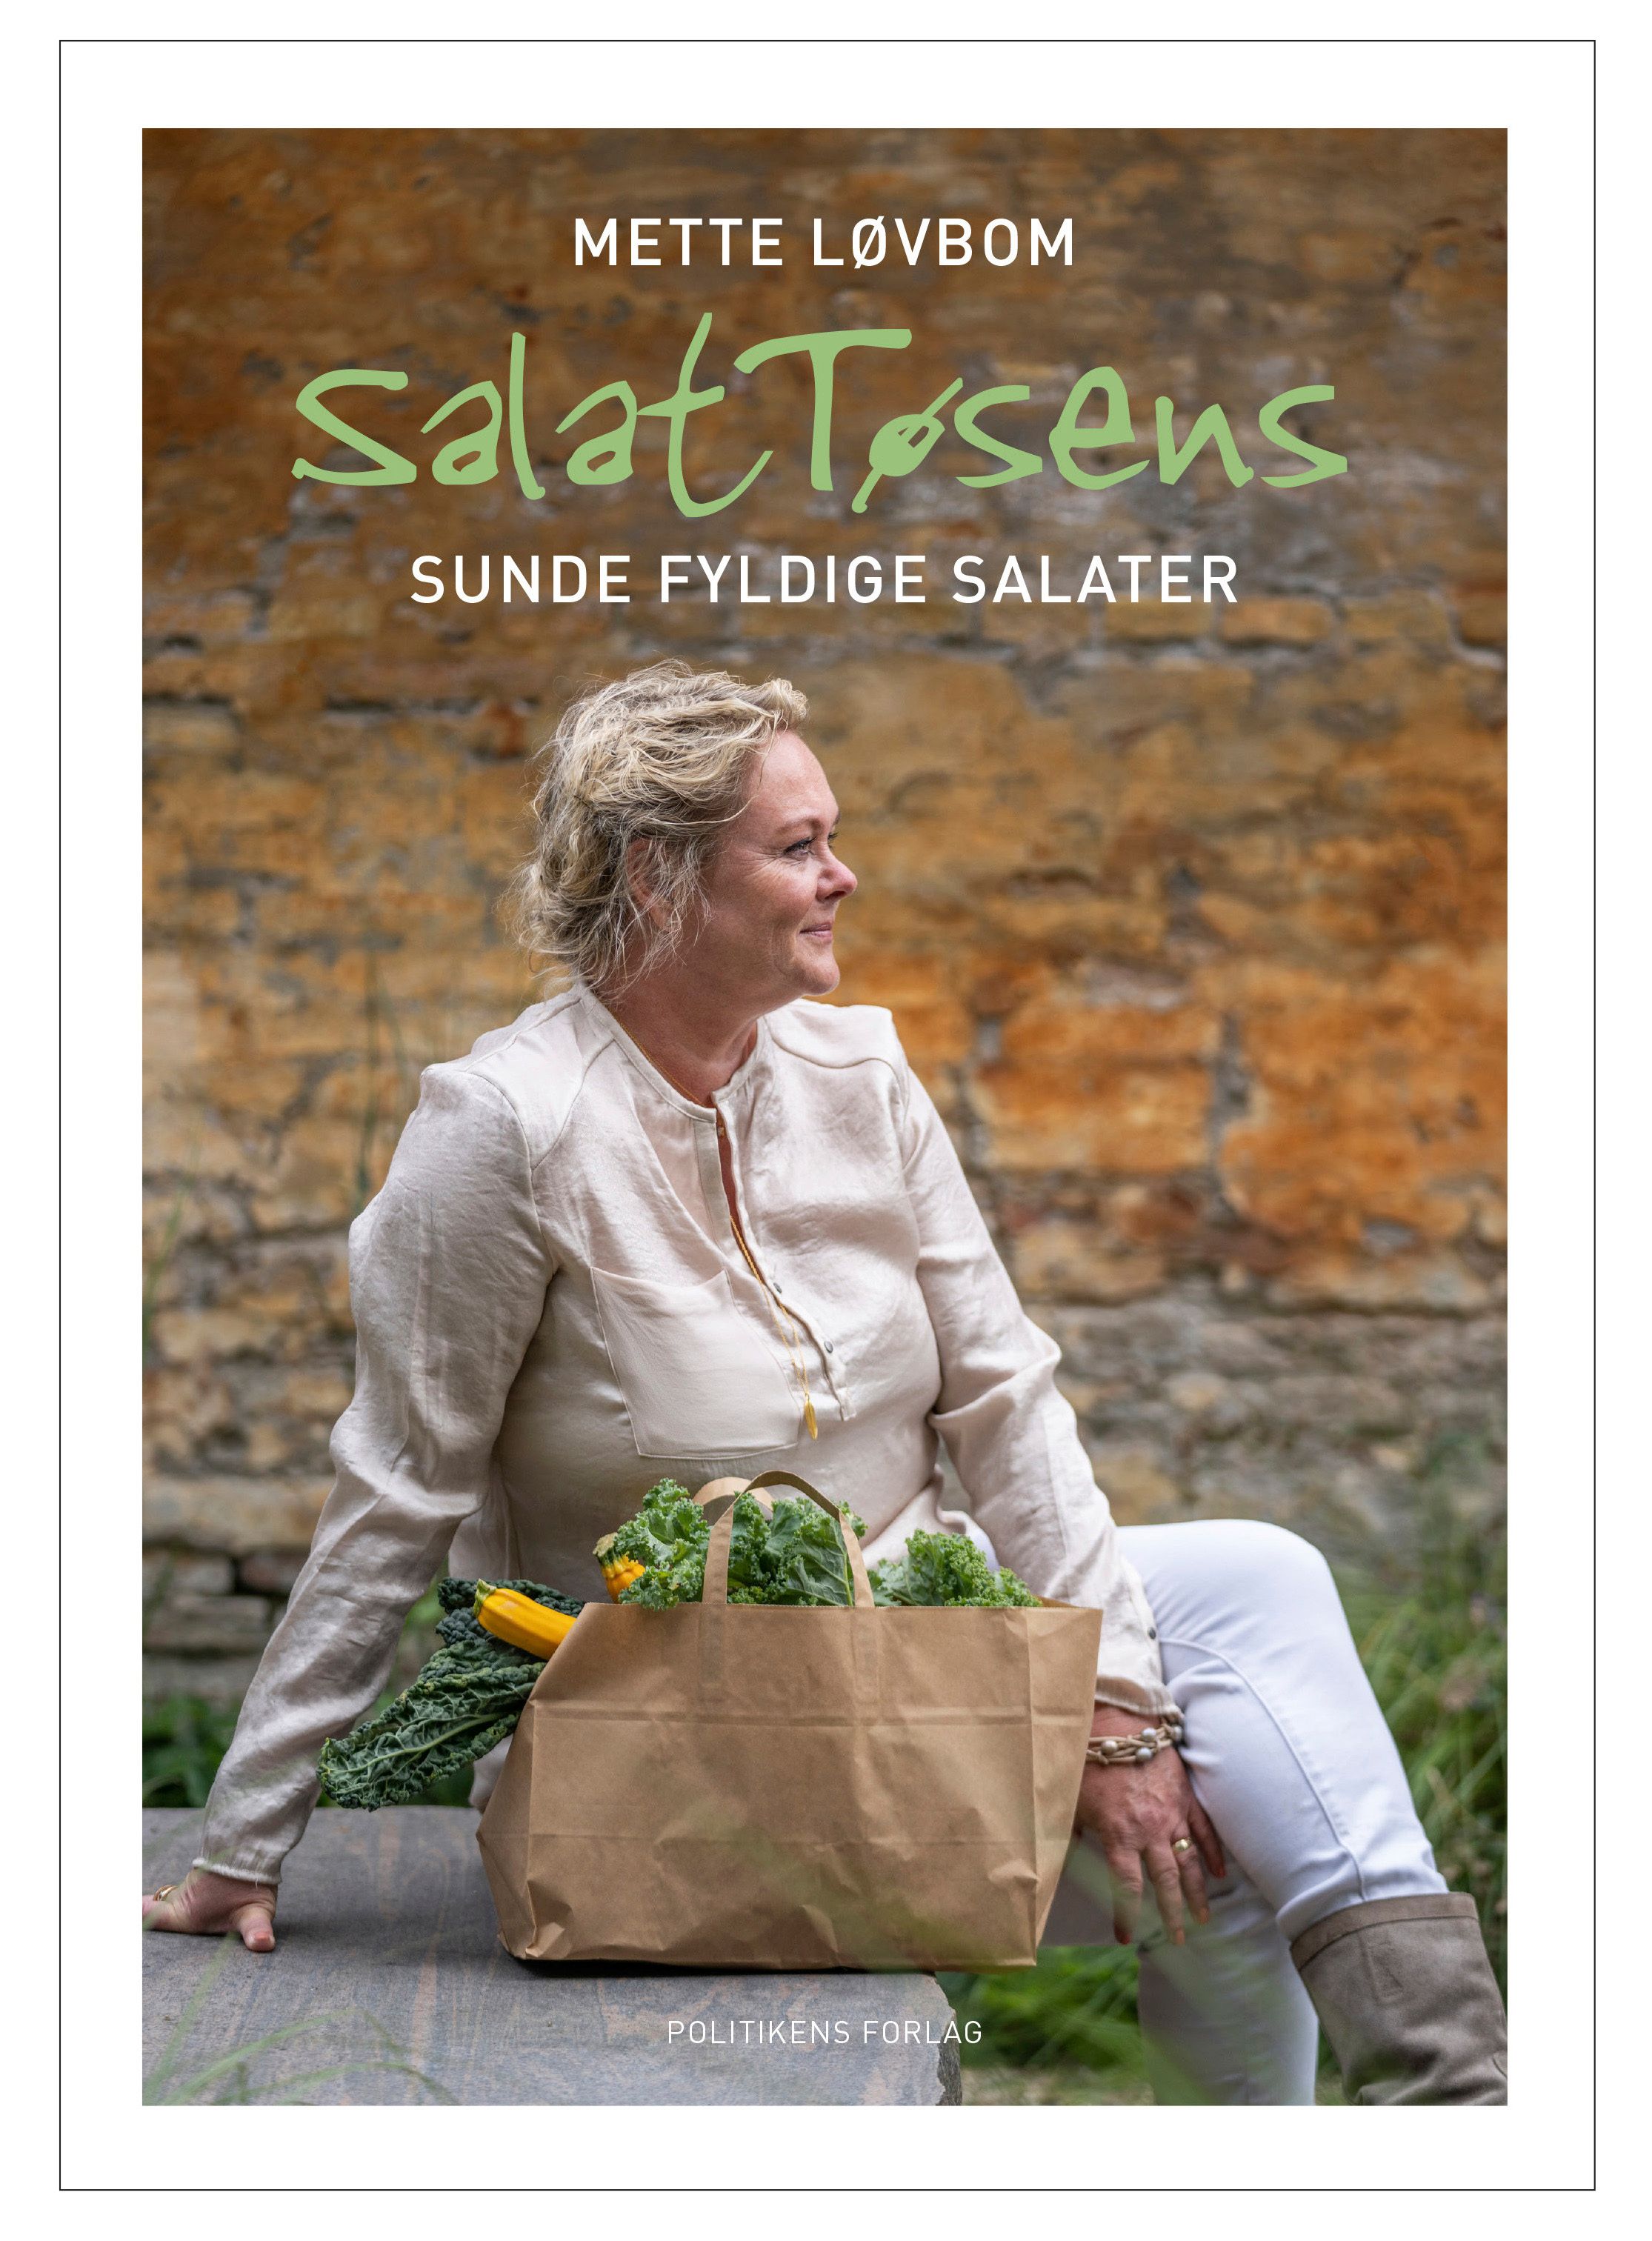 Salattøsens sunde fyldige salater, e-bok av Mette Løvbom